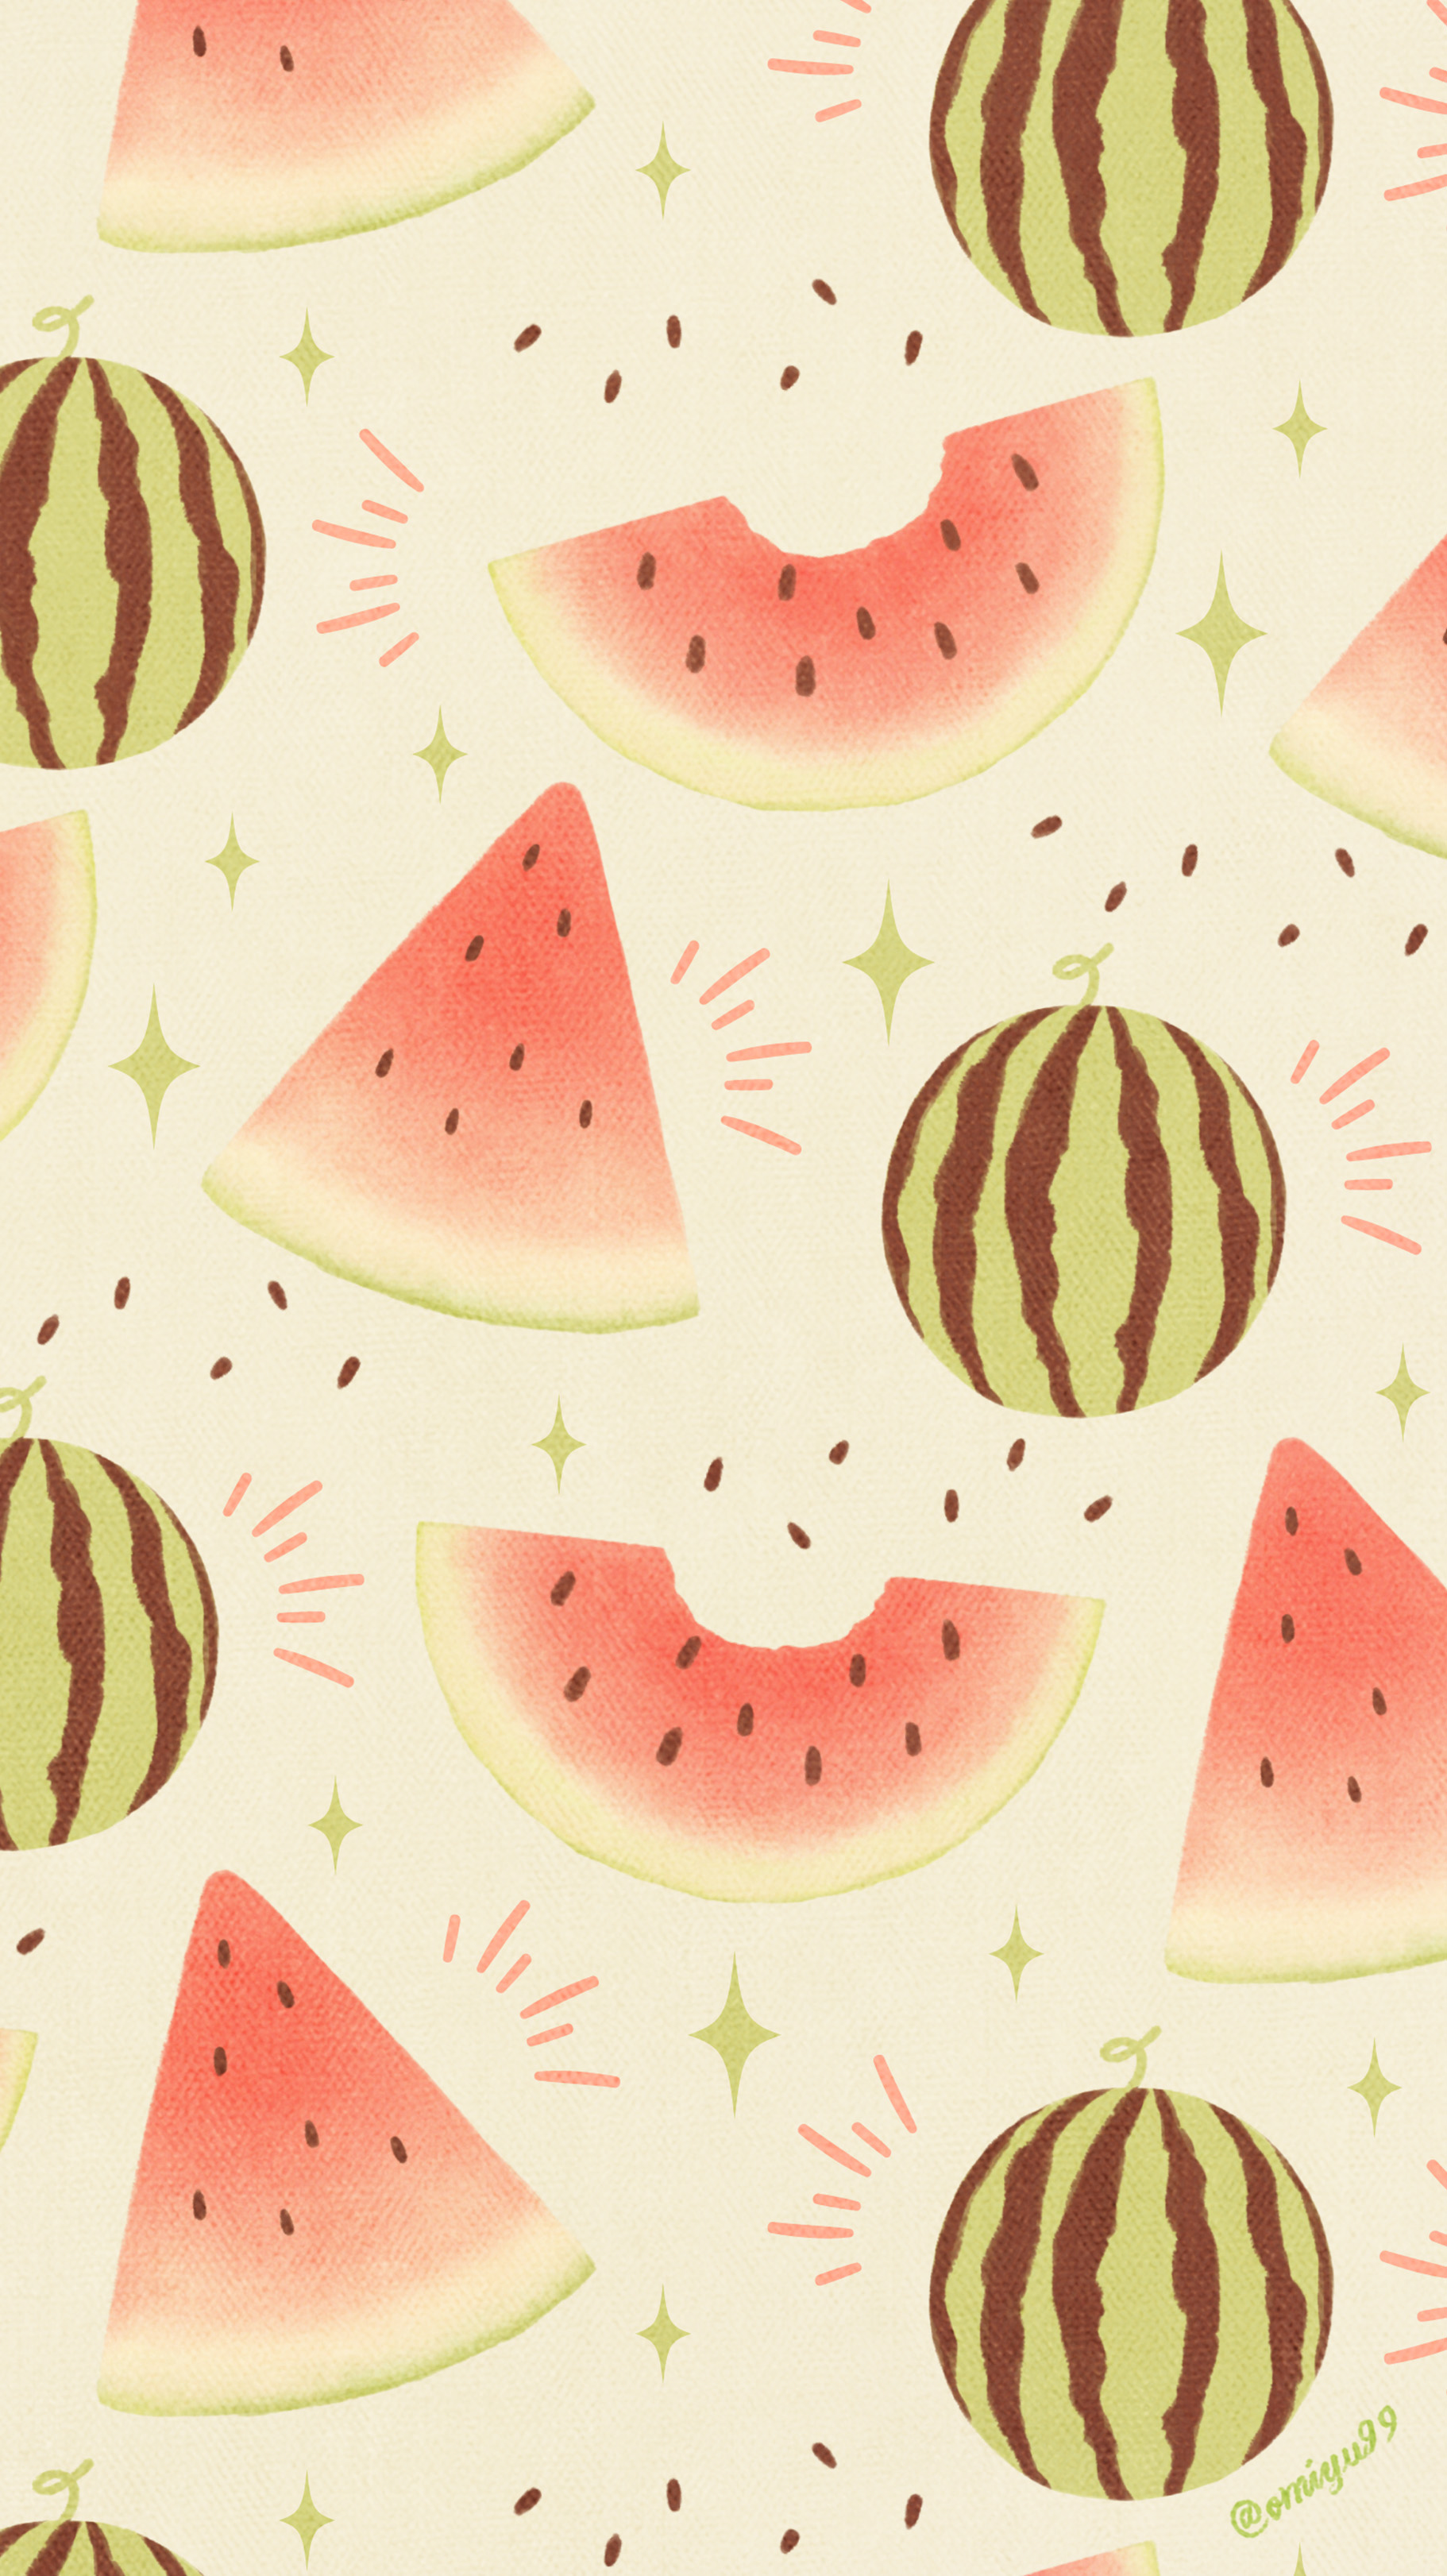 Twitter 上的 Omiyu お返事遅くなります スイカな壁紙 Illust Illustration 壁紙 イラスト Iphone壁紙 スイカ Watermelon 食べ物 T Co S800jey6fc Twitter